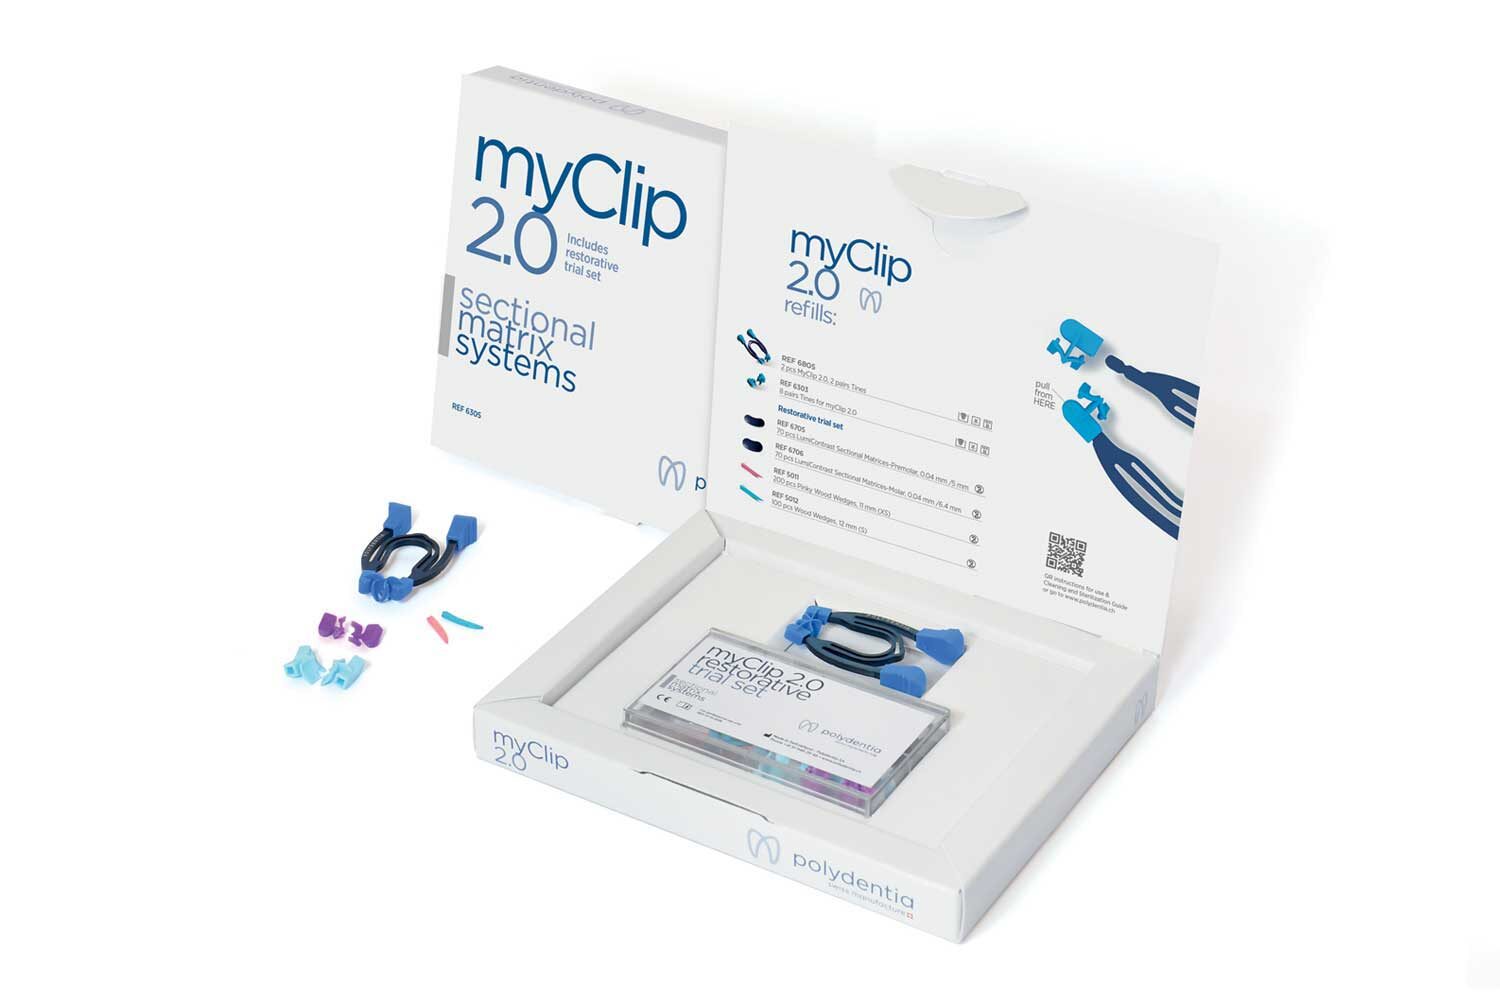 myClip 2.0 systemes de matrices sectorielles odontologie conservatrice